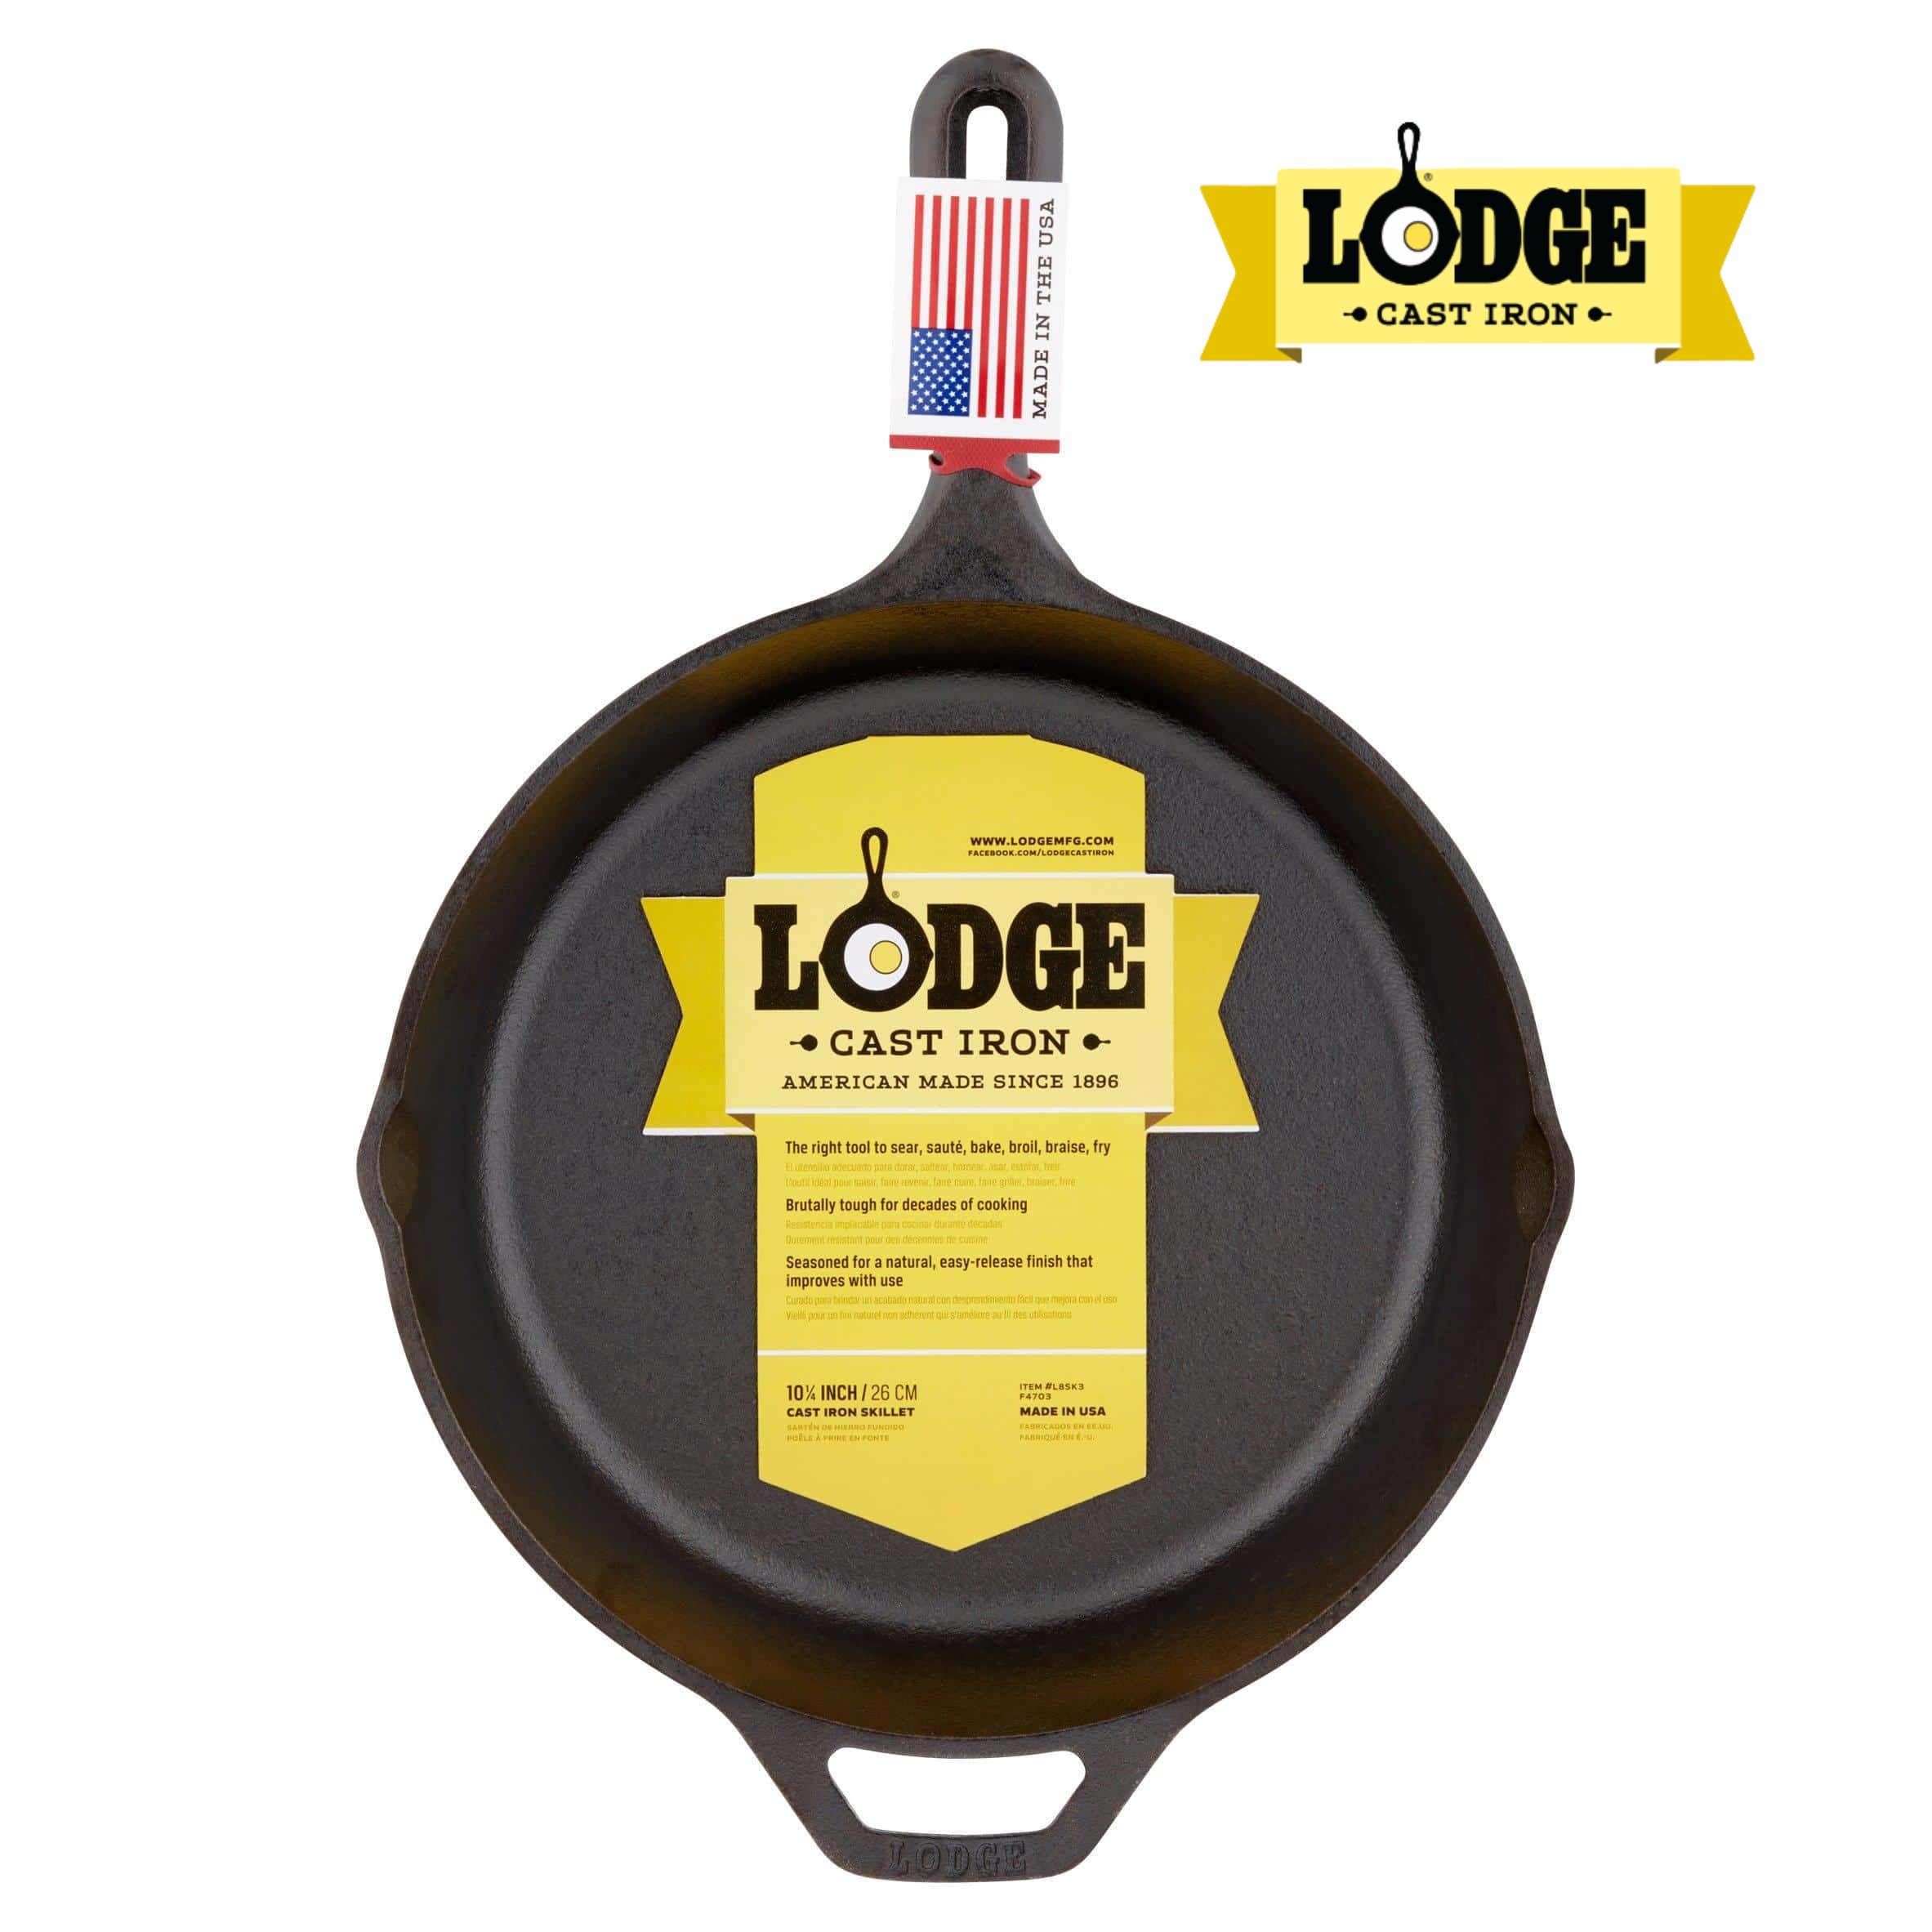 [Chính hãng LOGDE - MỸ] Chảo gang đúc chính hãng Lodge 26,5 cm - L8SK3. Chảo dùng nướng, chiên, xào, áp chảo thực phẩm